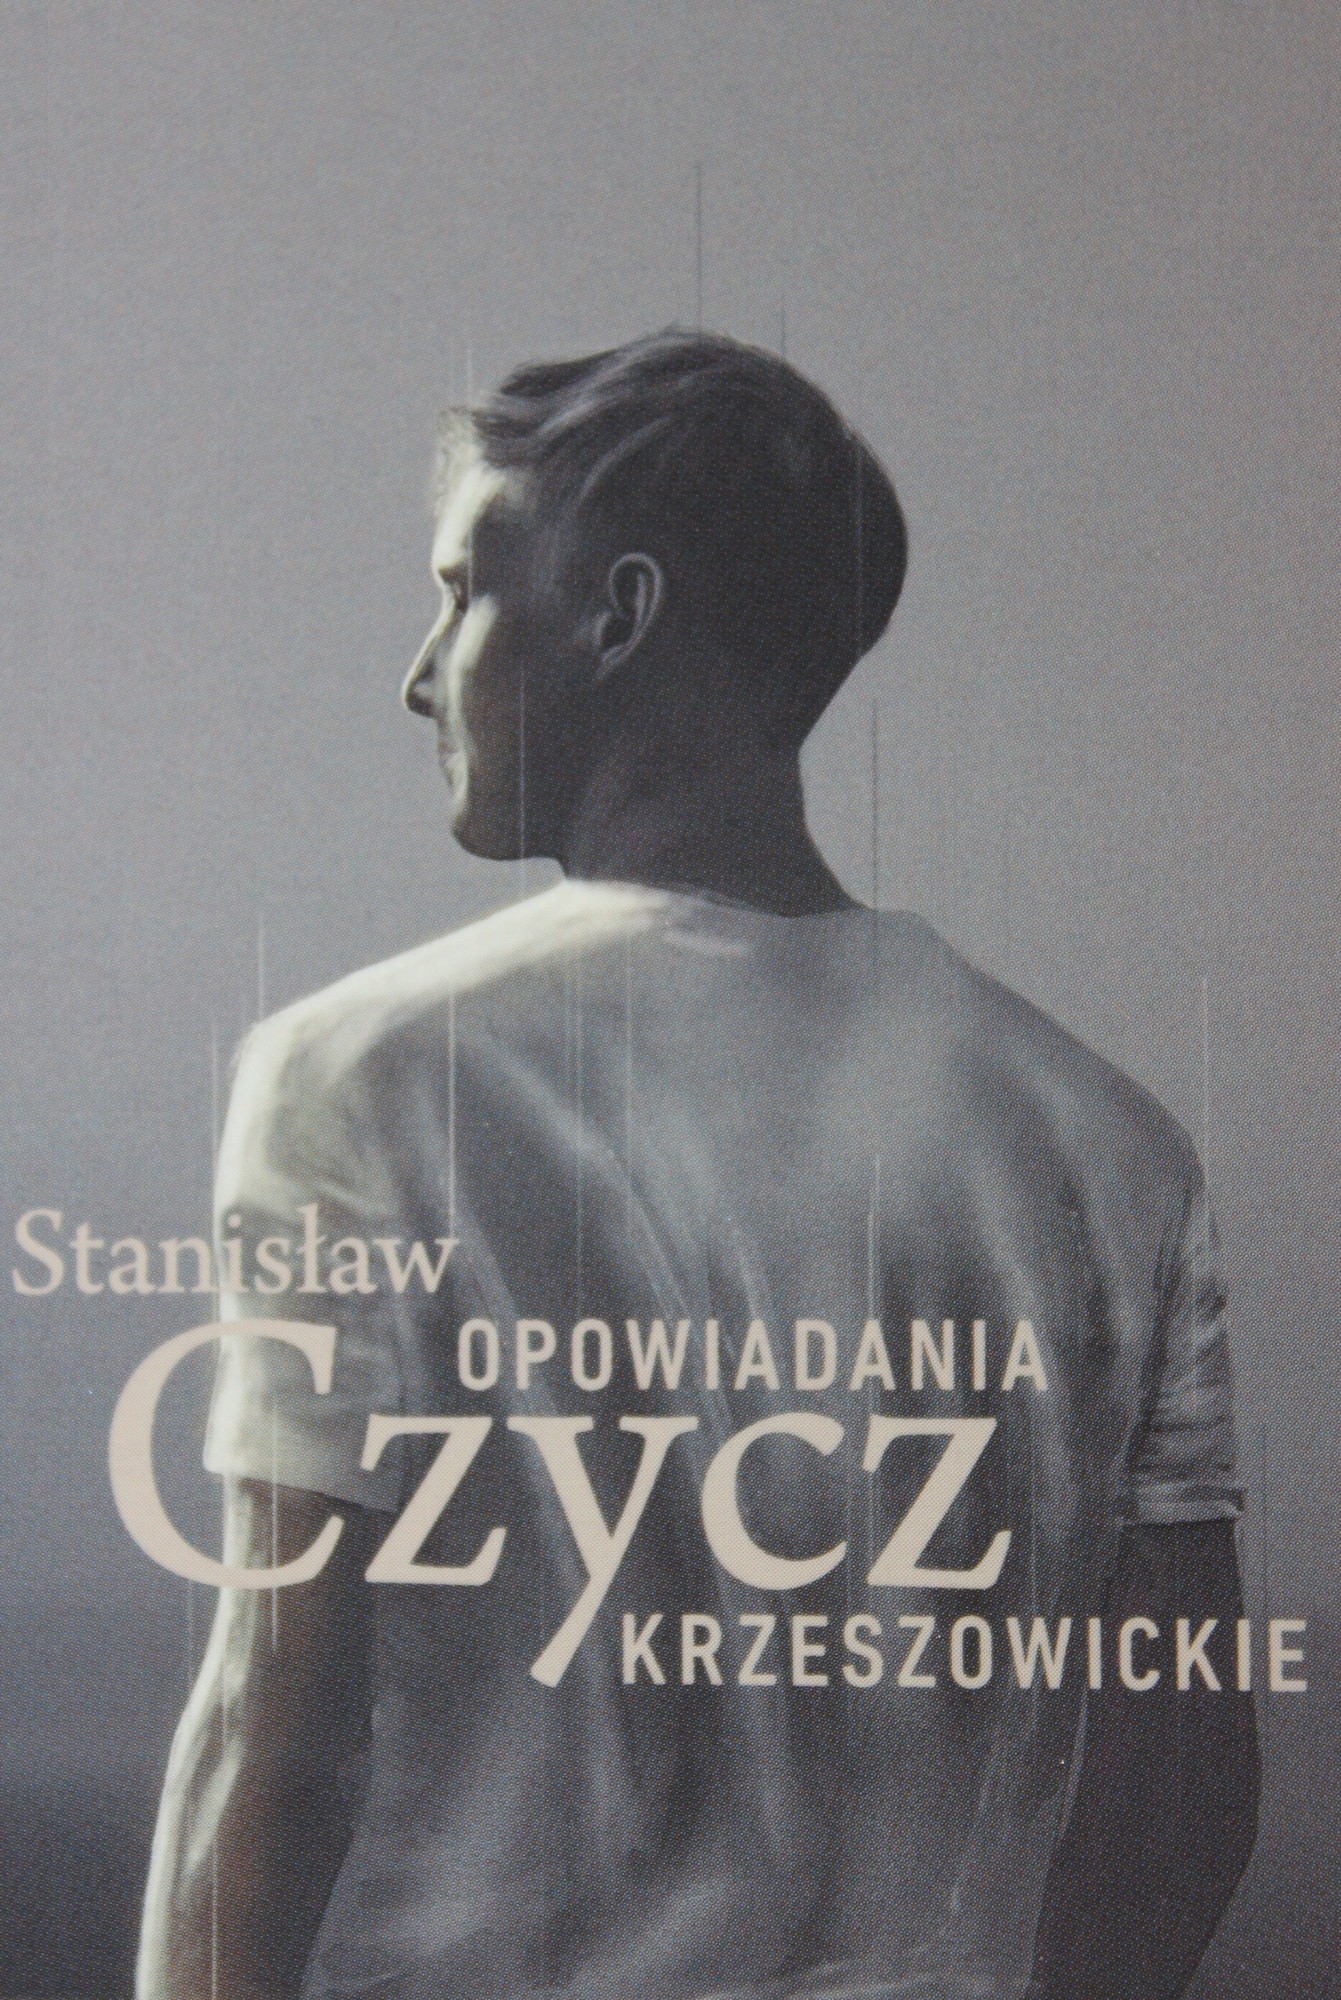 Stanisław Czycz, „Opowiadania krzeszowickie”, Wydawnictwo Episteme (źródło: materiały prasowe wydawcy)